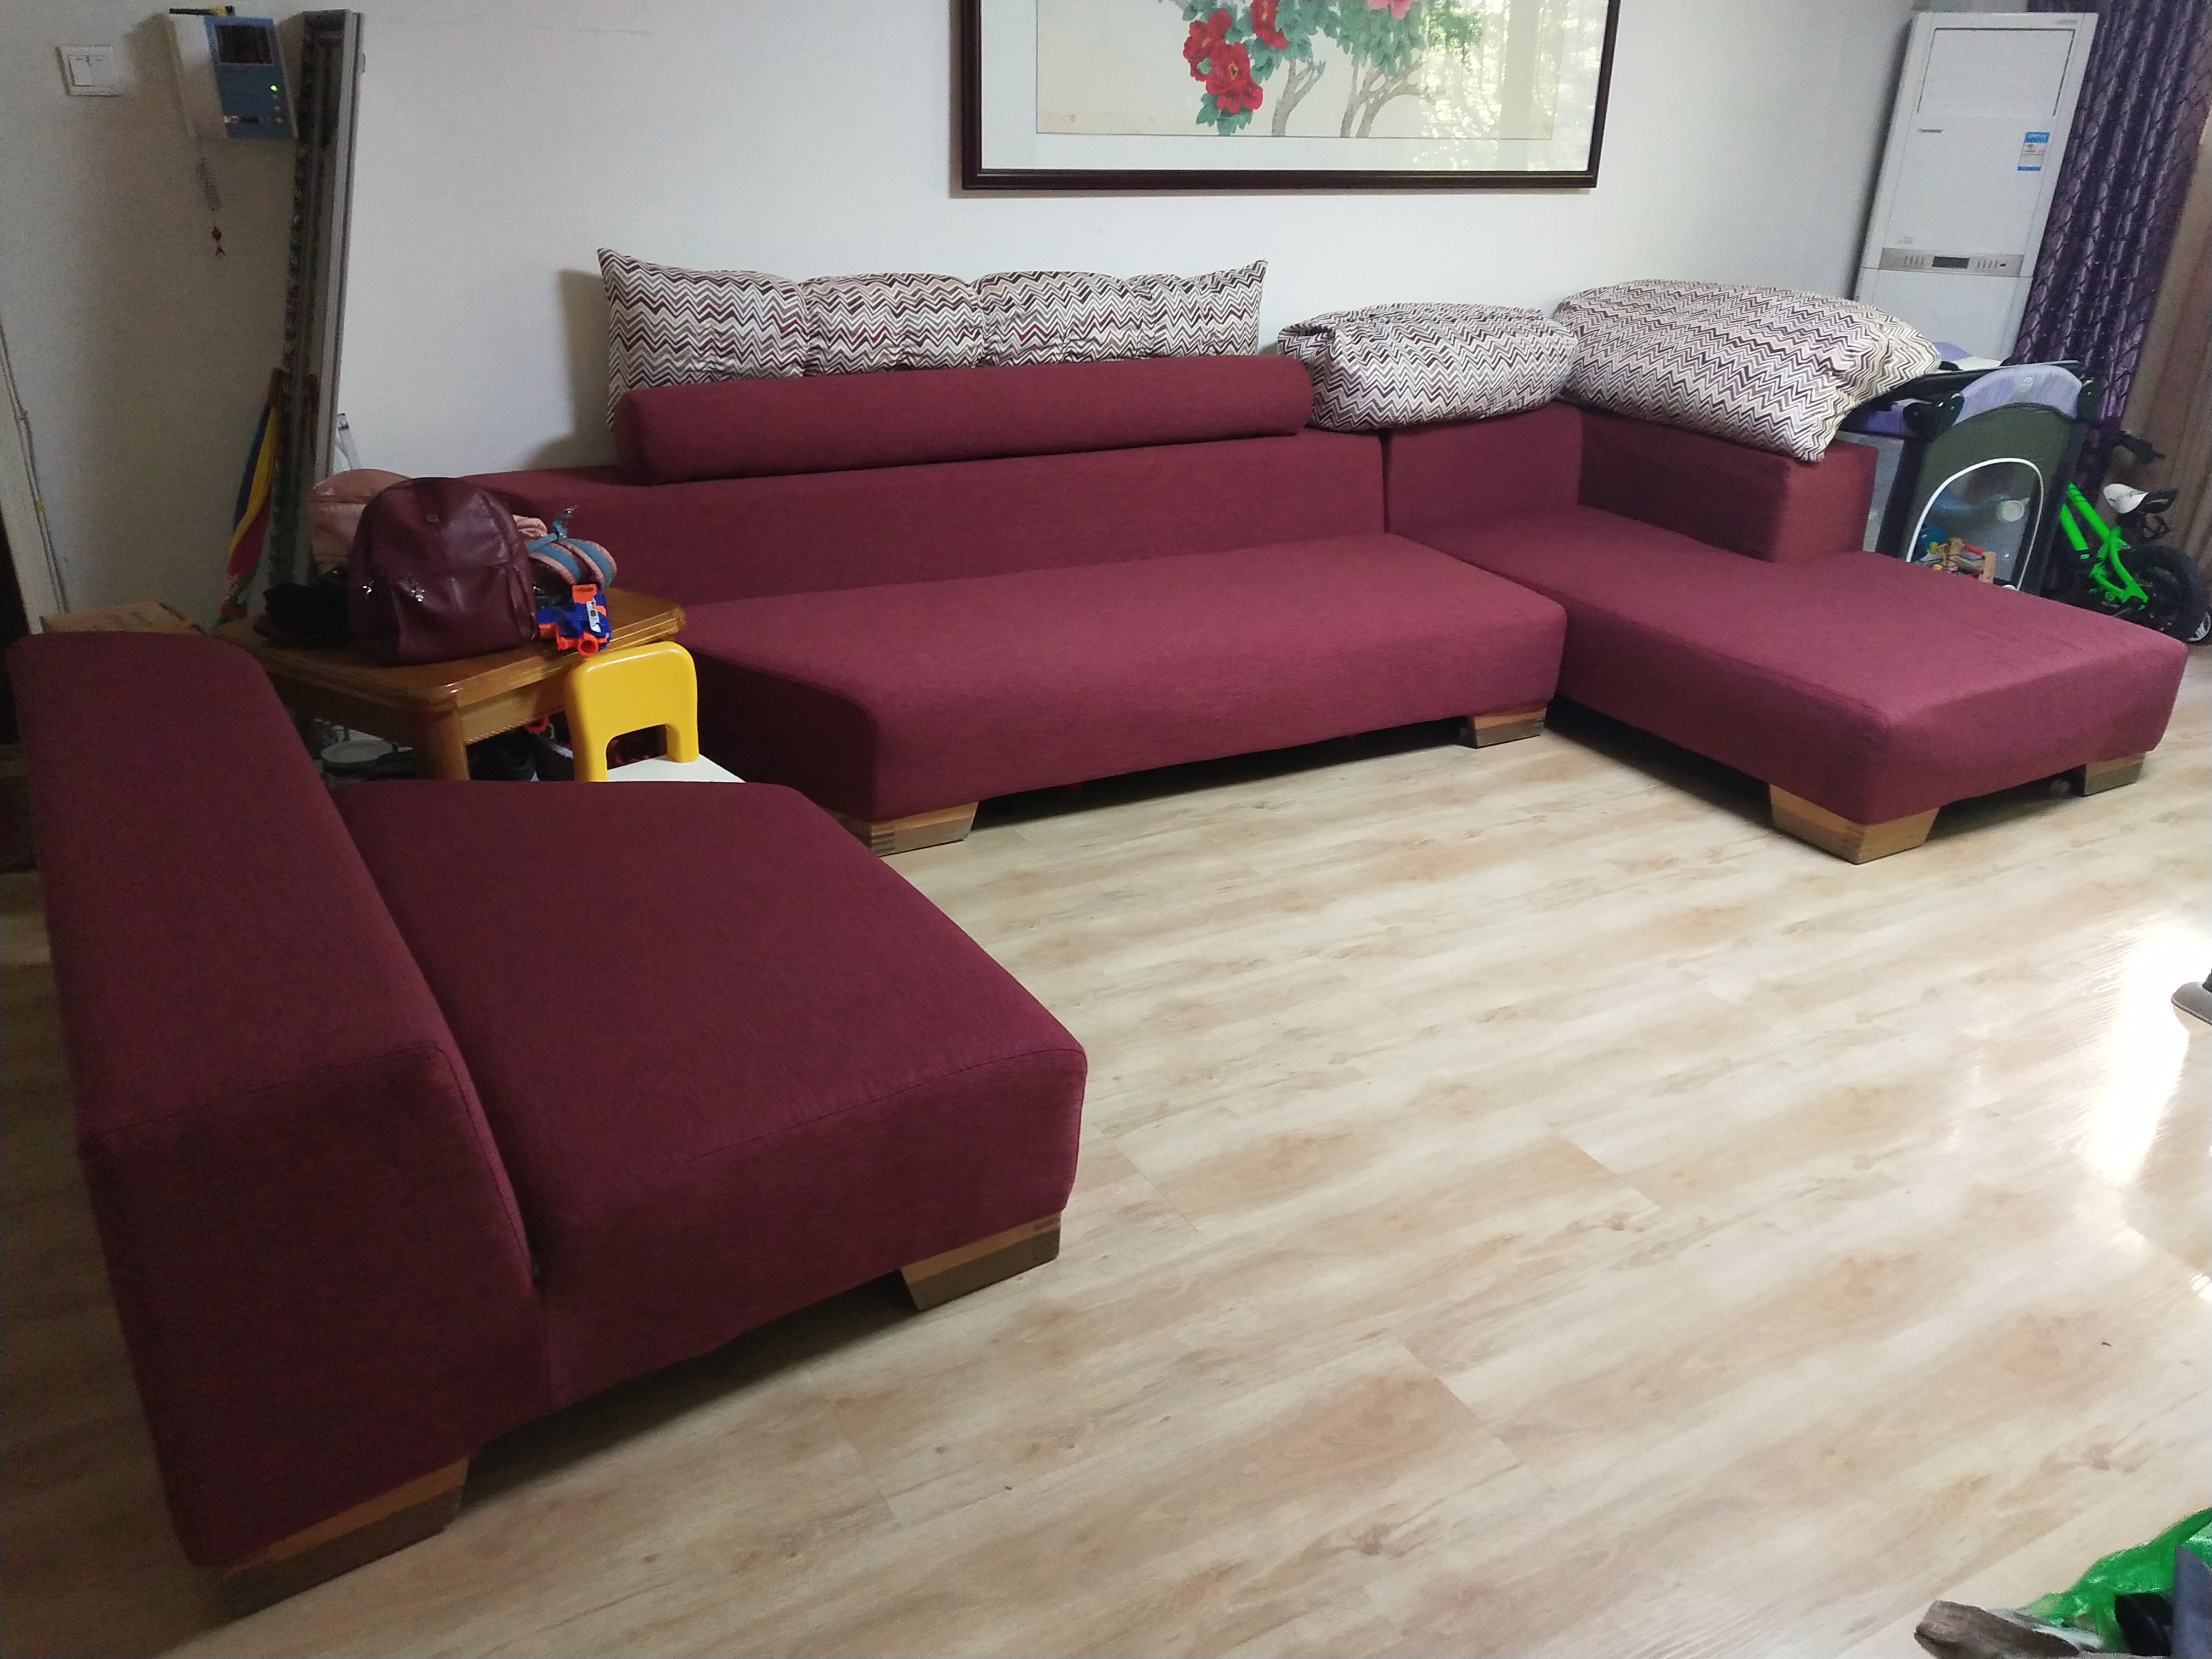 济南光明布艺订做沙发套加工床垫沙发换海绵修沙发的图片